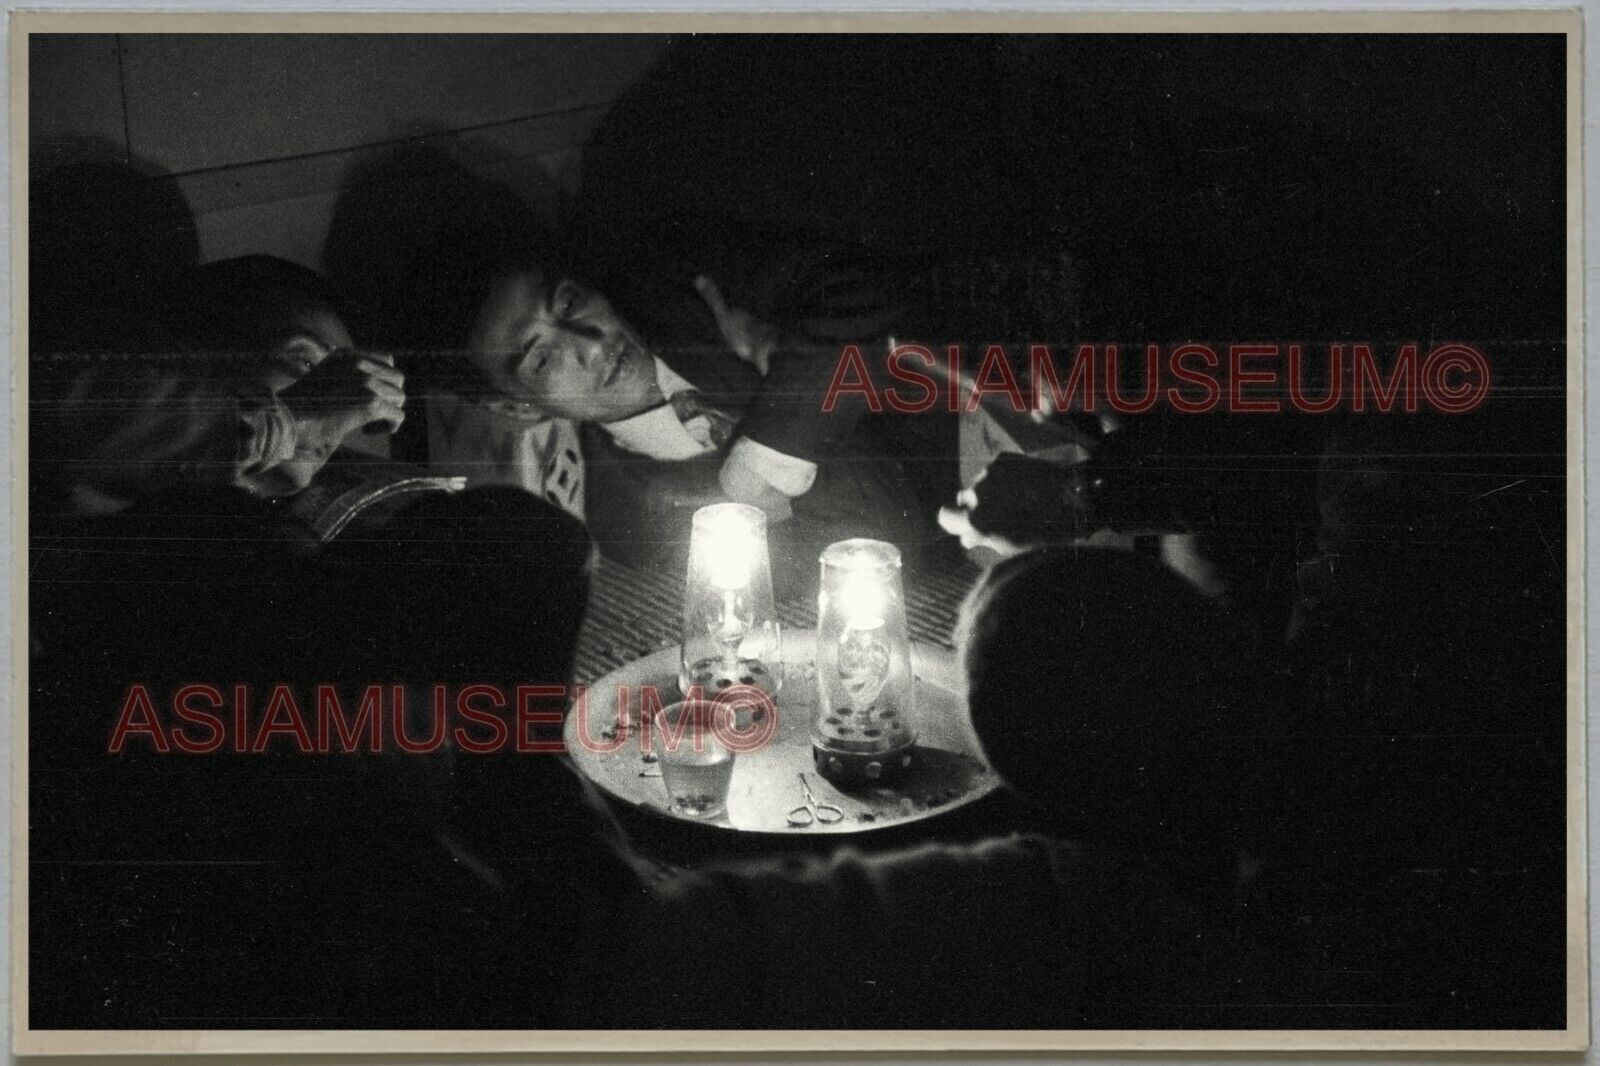 40's HONG KONG MAN WEAR SUIT SMOKING OPIUM DEN Vintage Photo Postcard RPPC #1359